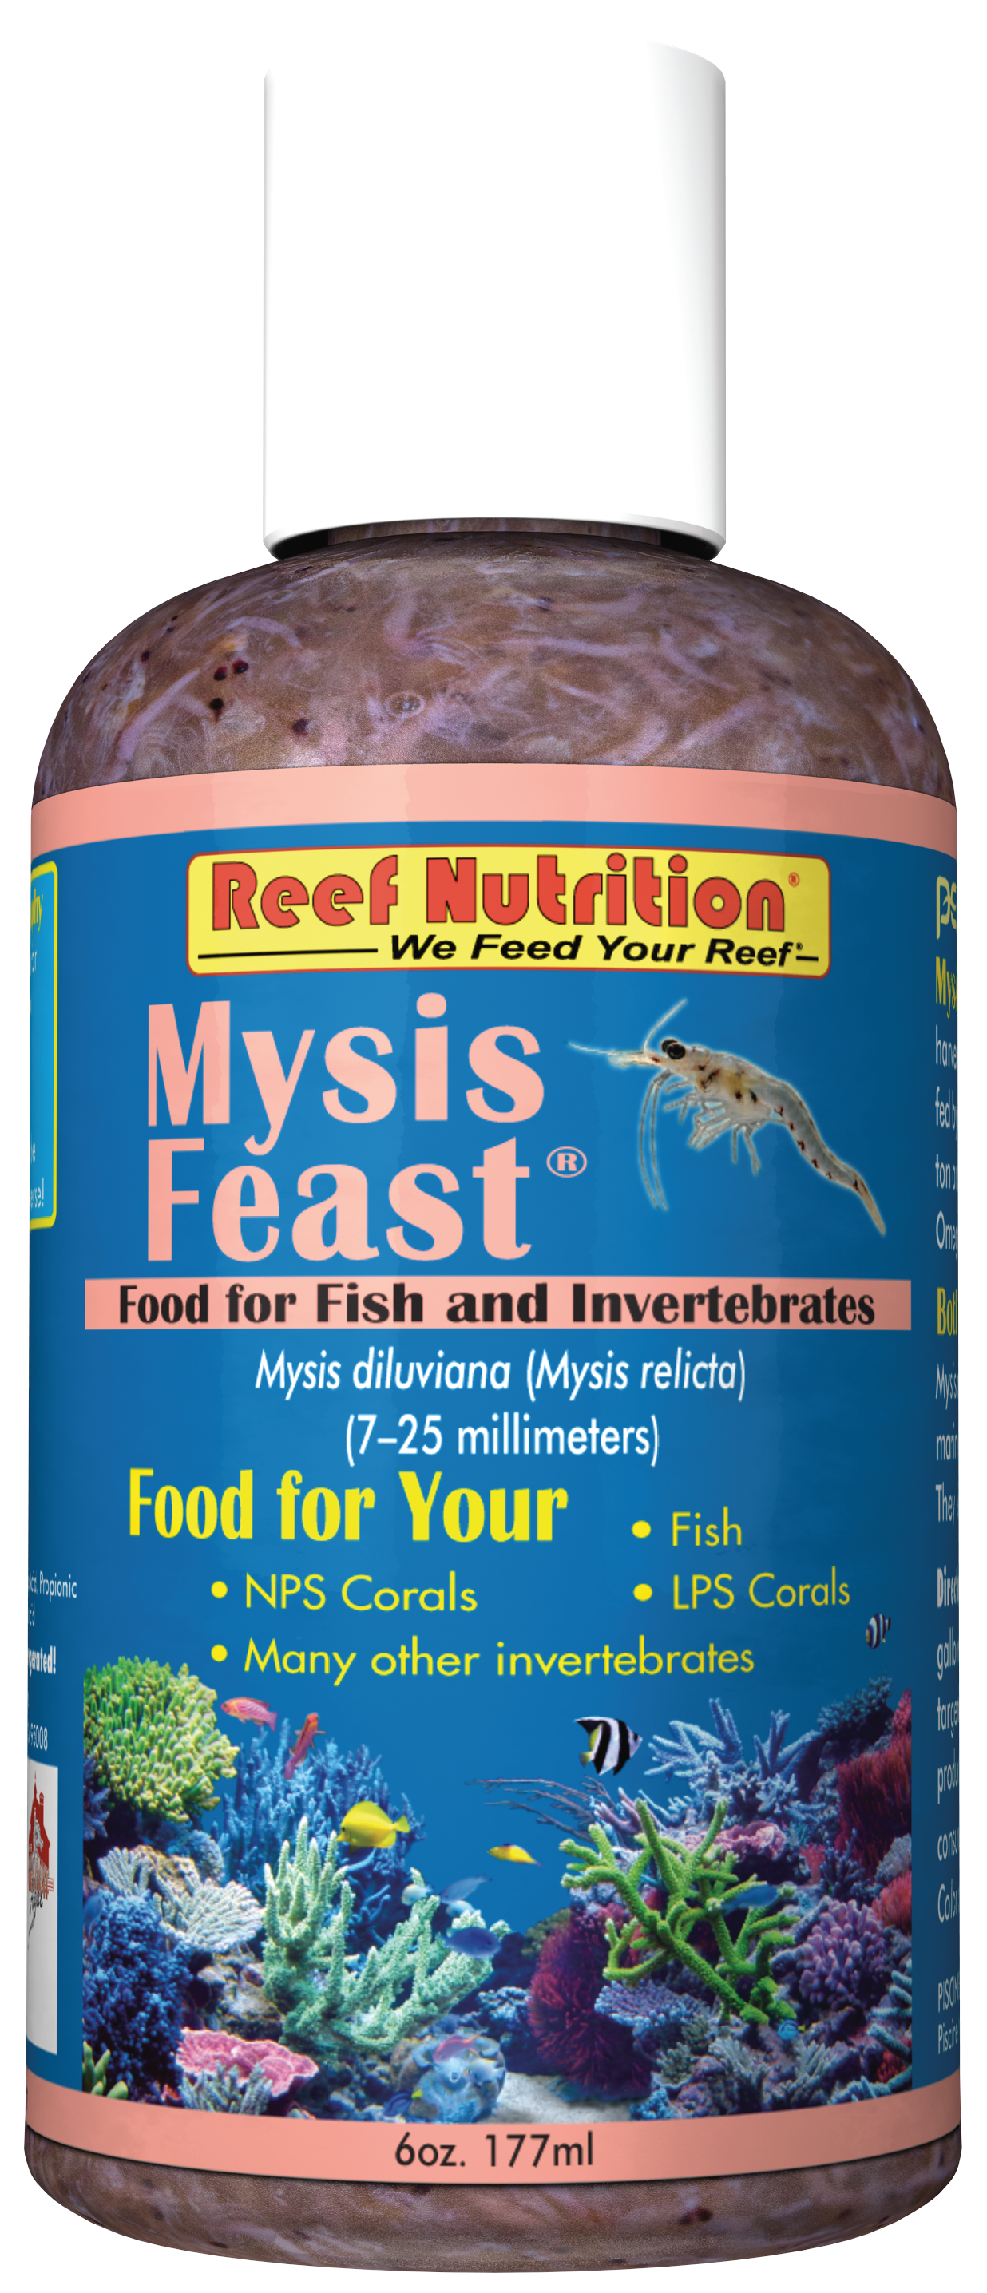 Mysis Feast